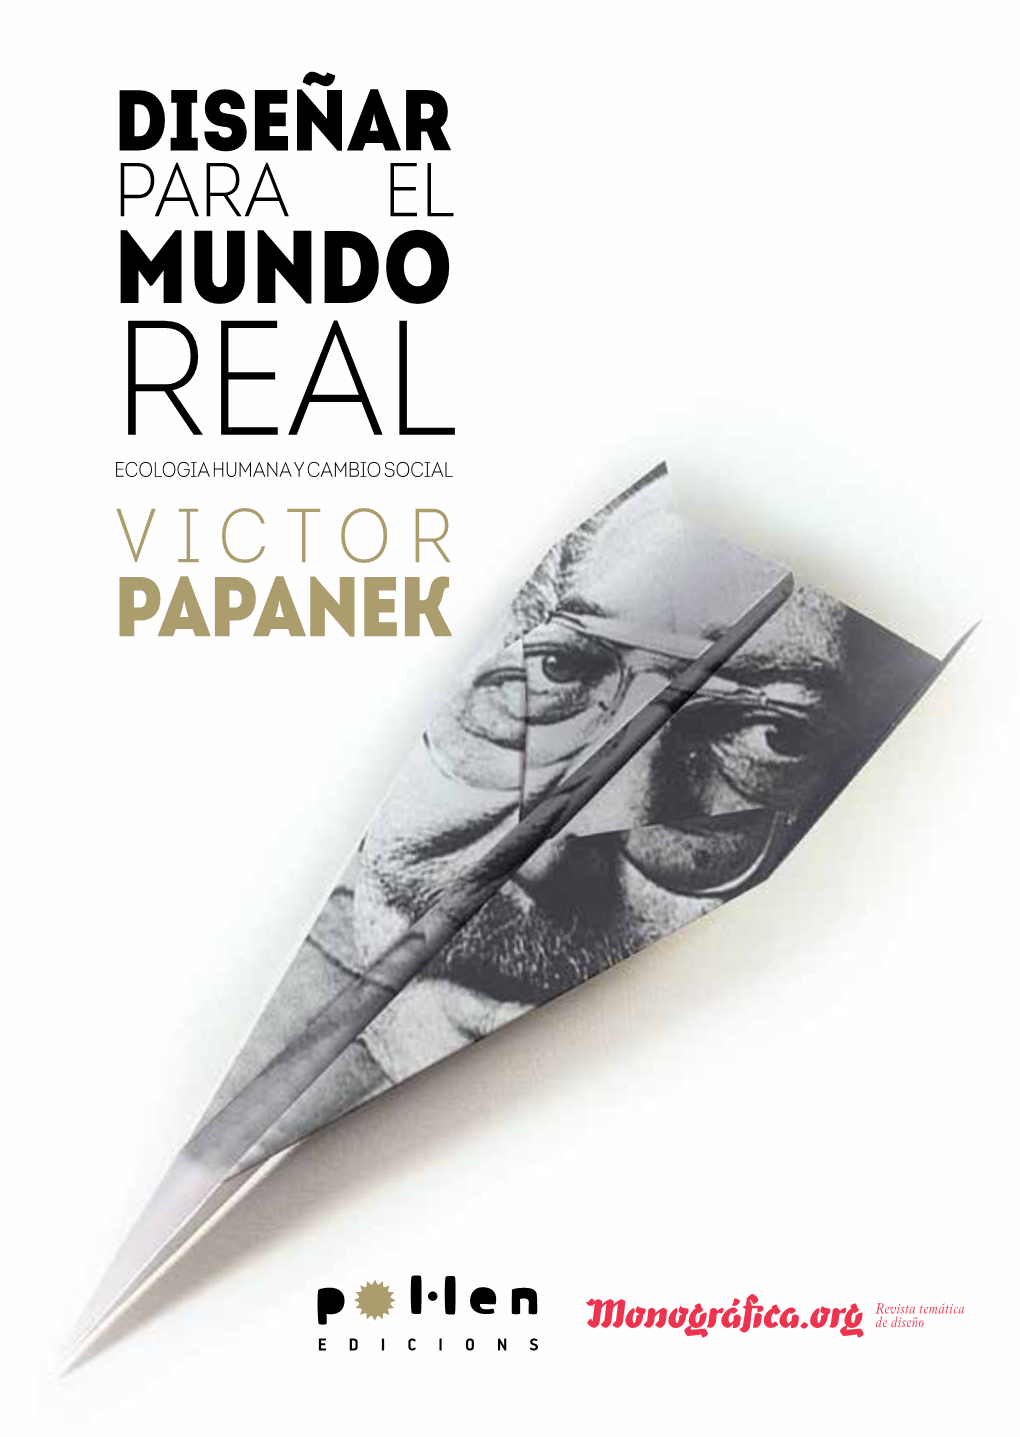 Papanek, "Diseñar Para El Mundo Real"